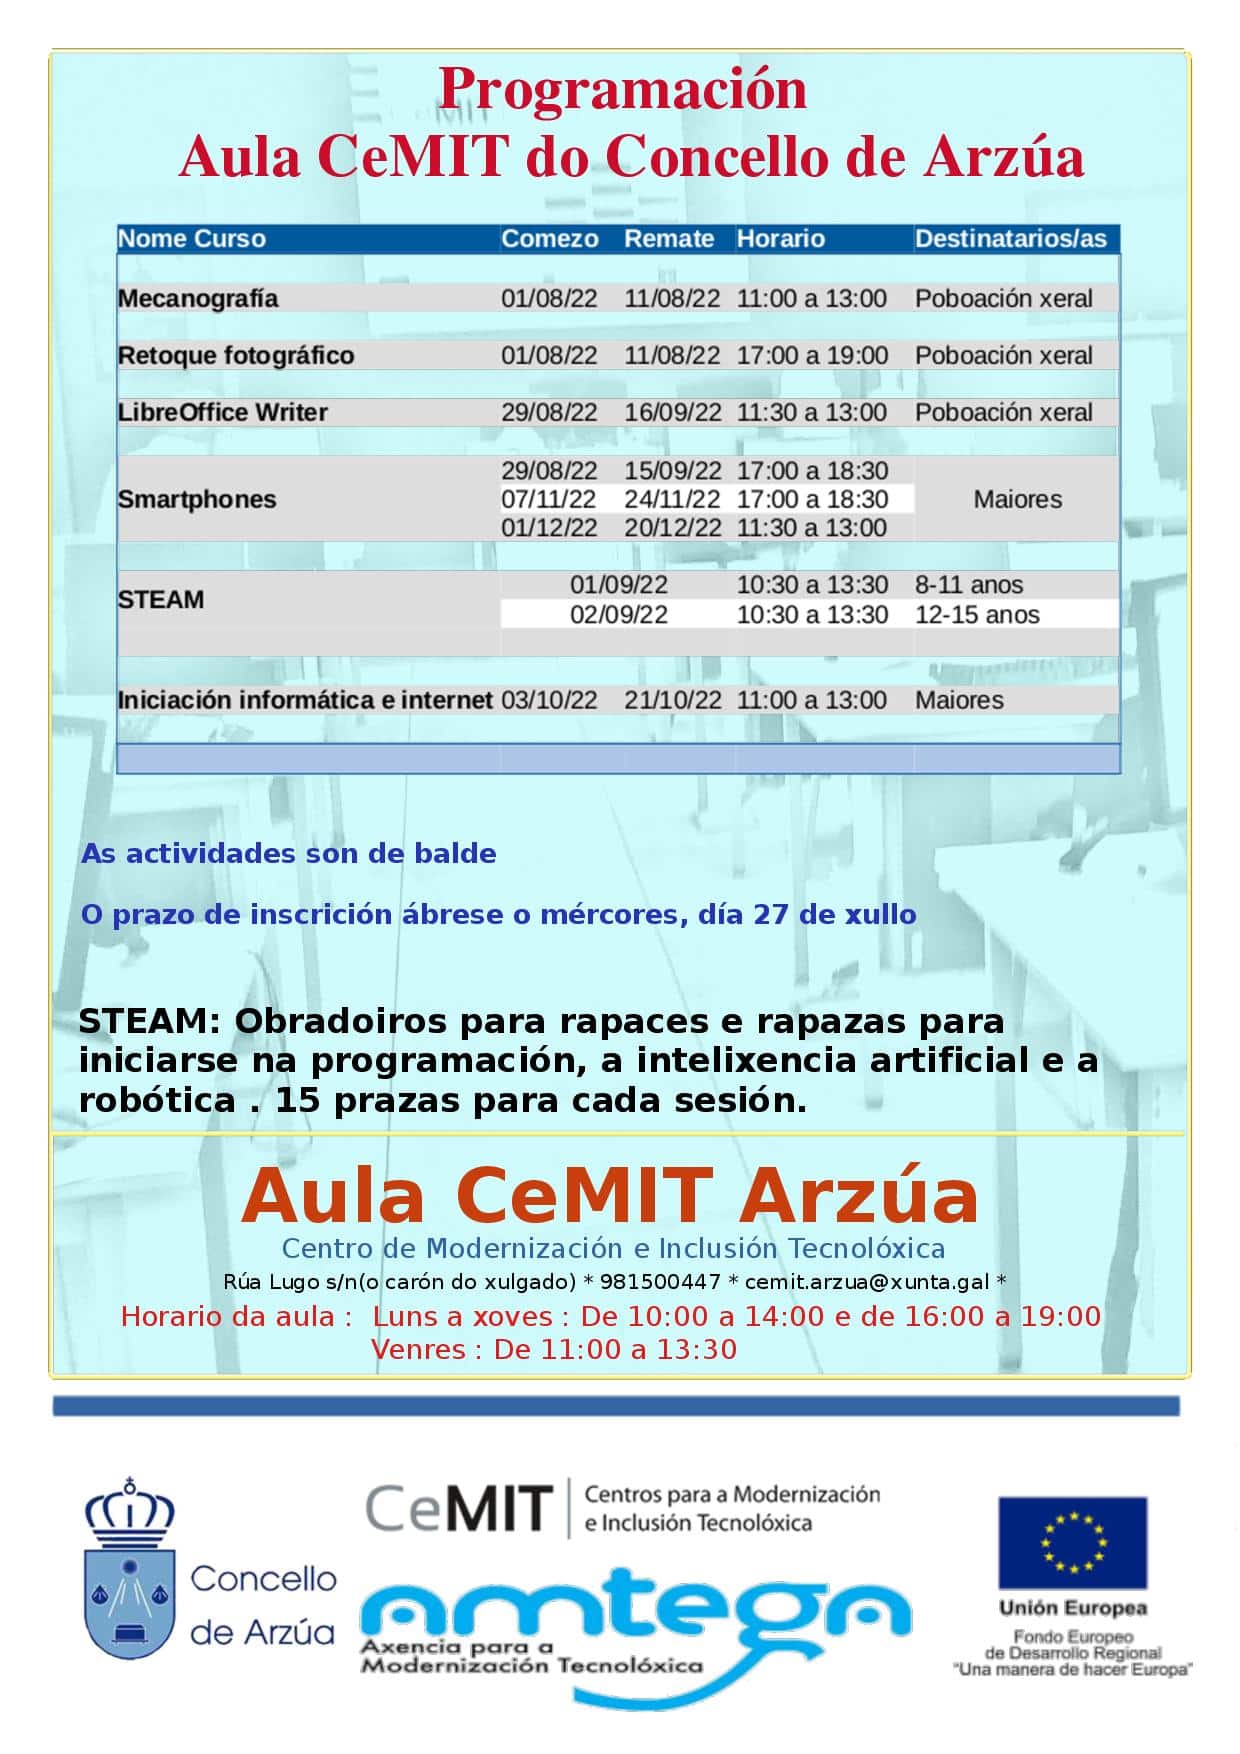 Ampla oferta formativa da aula CeMIT do concello de Arzúa ata final de ano